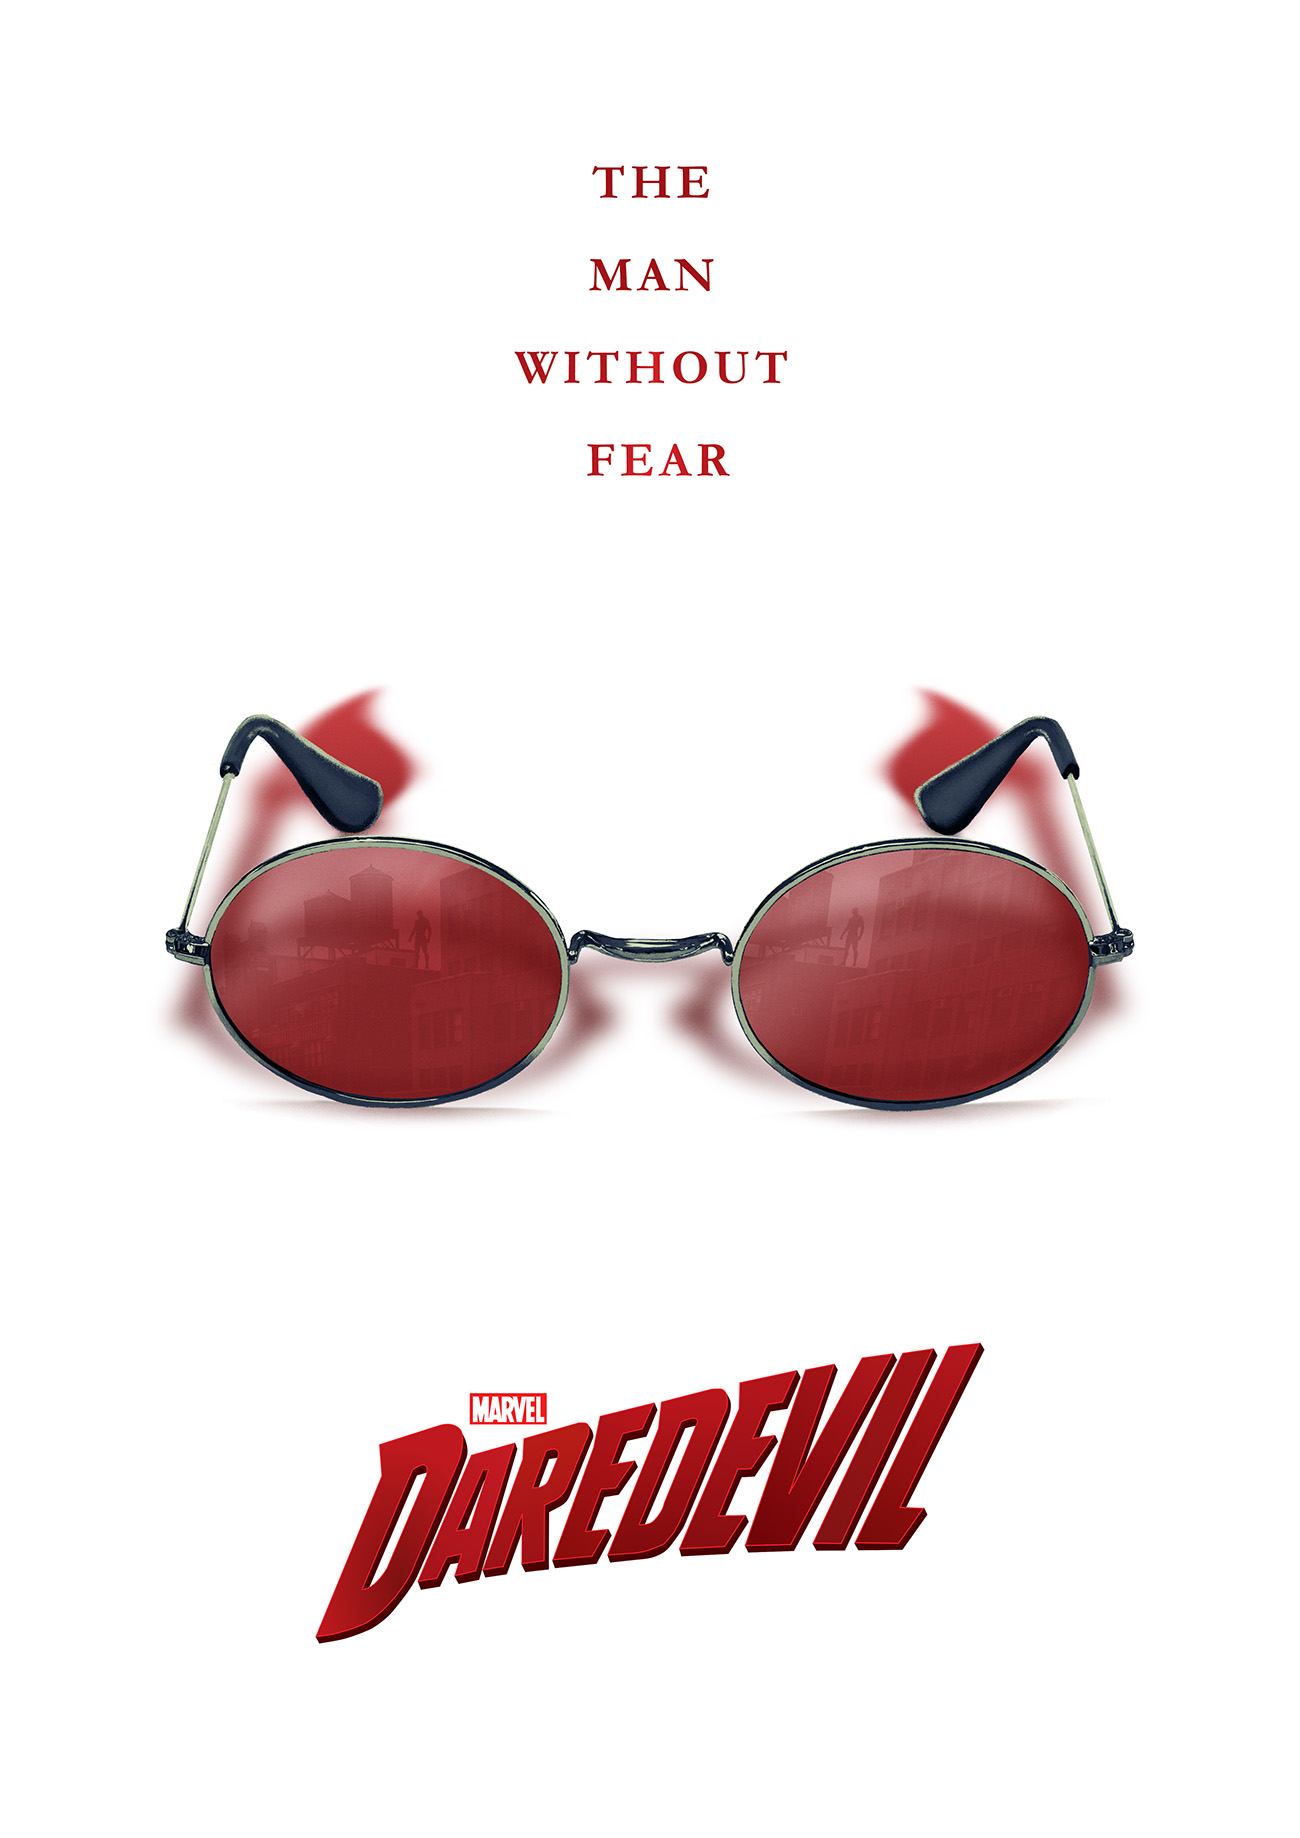 Daredevil (Netflix)